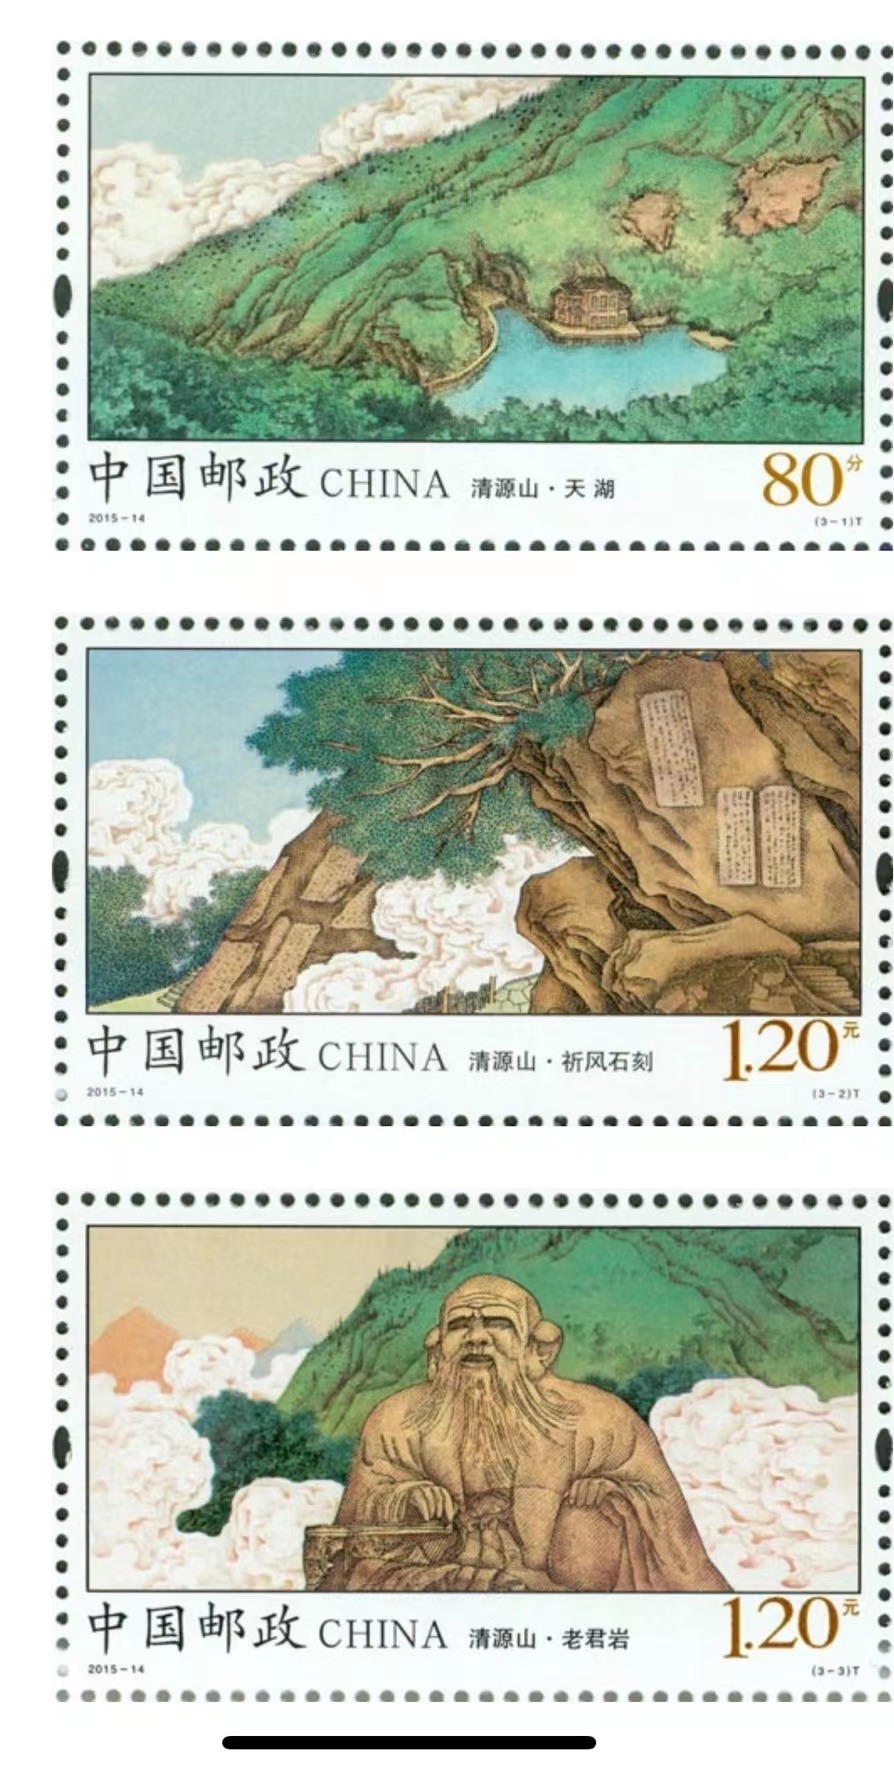 中国邮政发行画家郭华卫作品 引爆上涨趋势